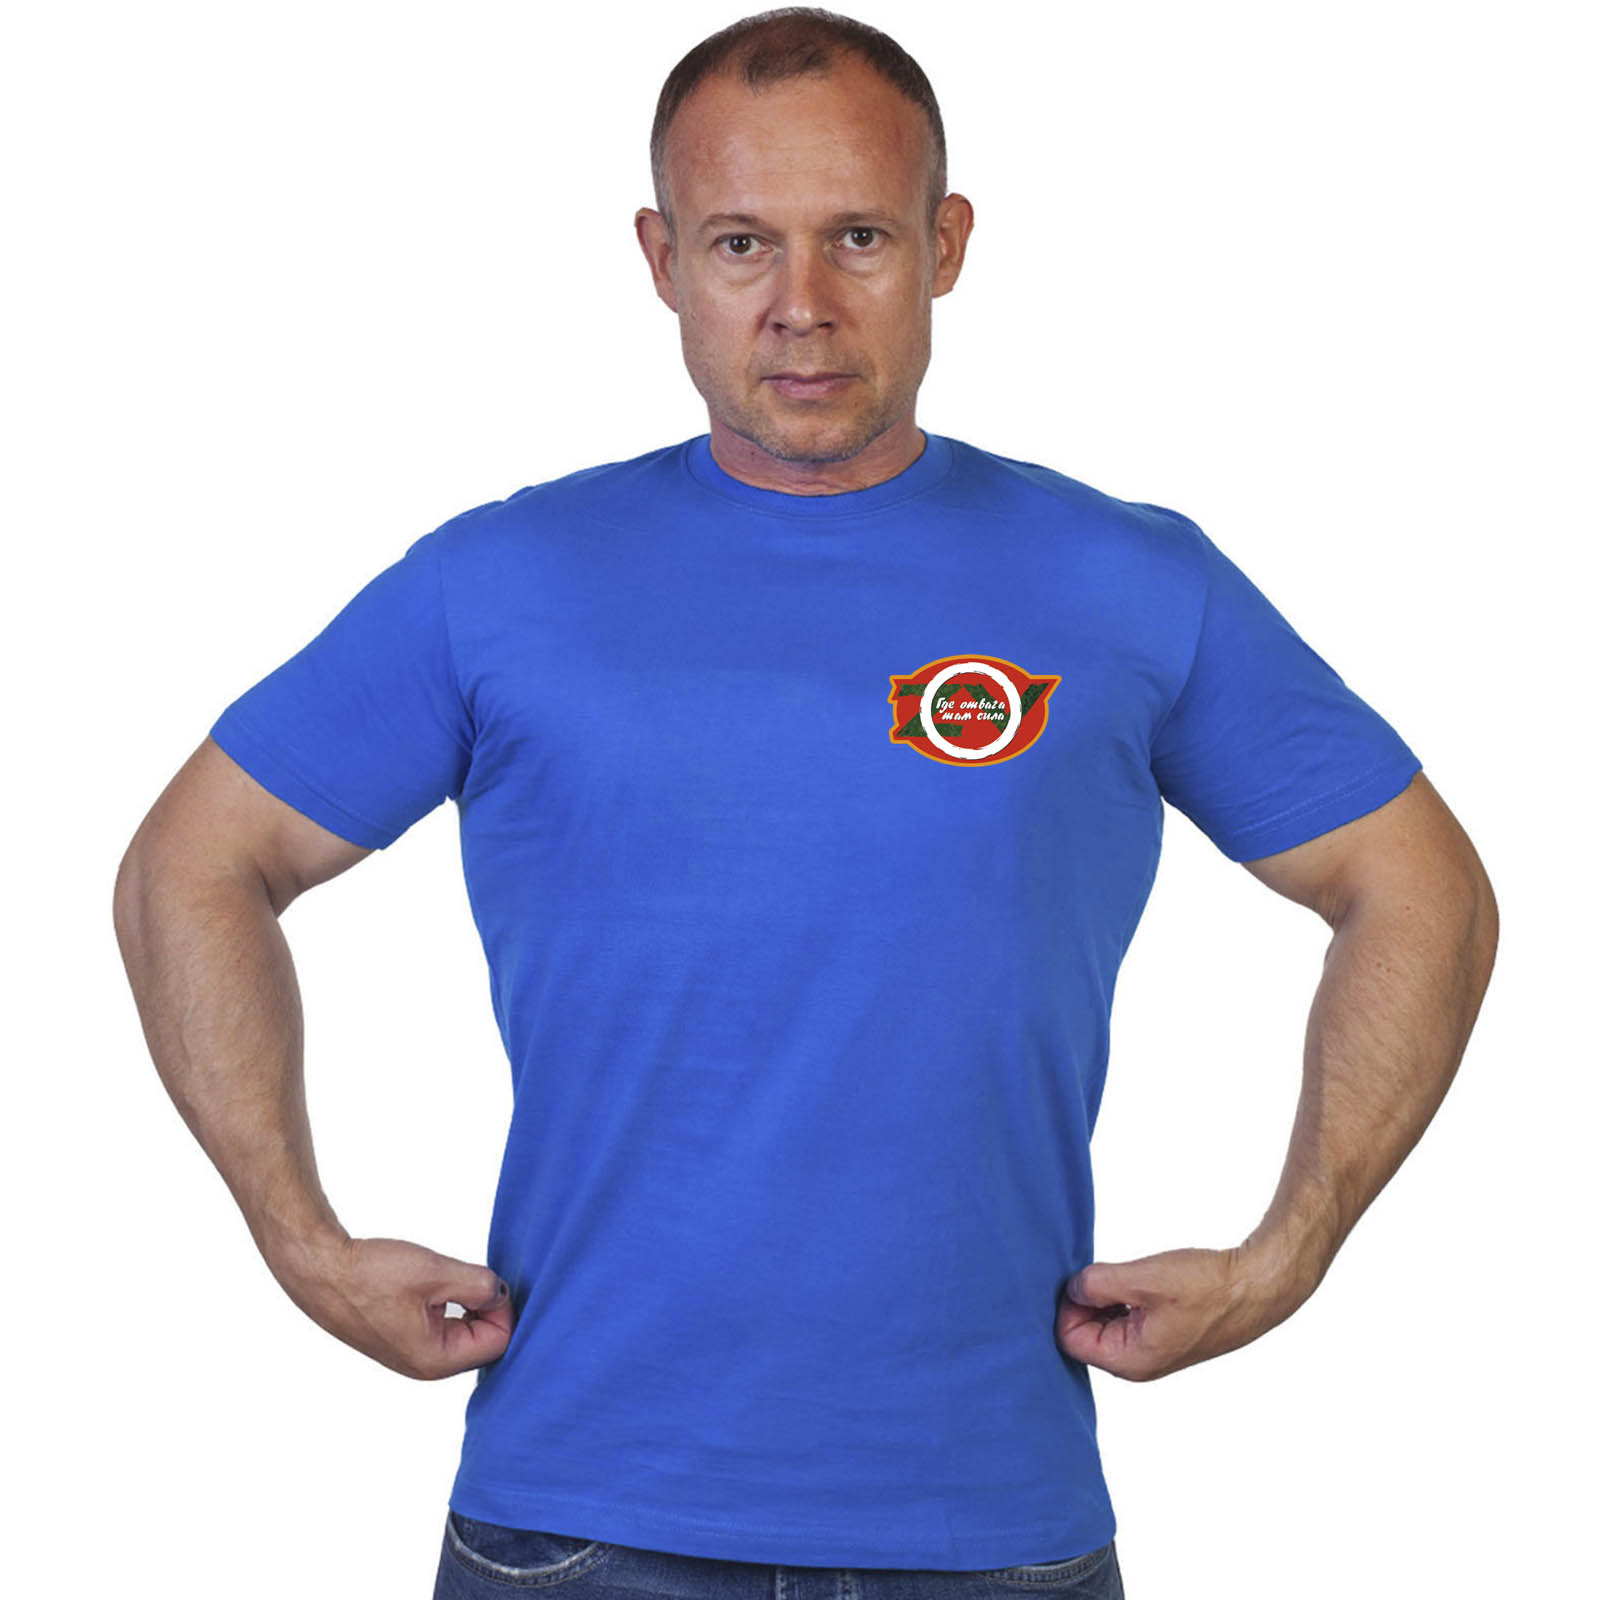 Васильковая футболка с термопринтом "Где отвага, там сила"